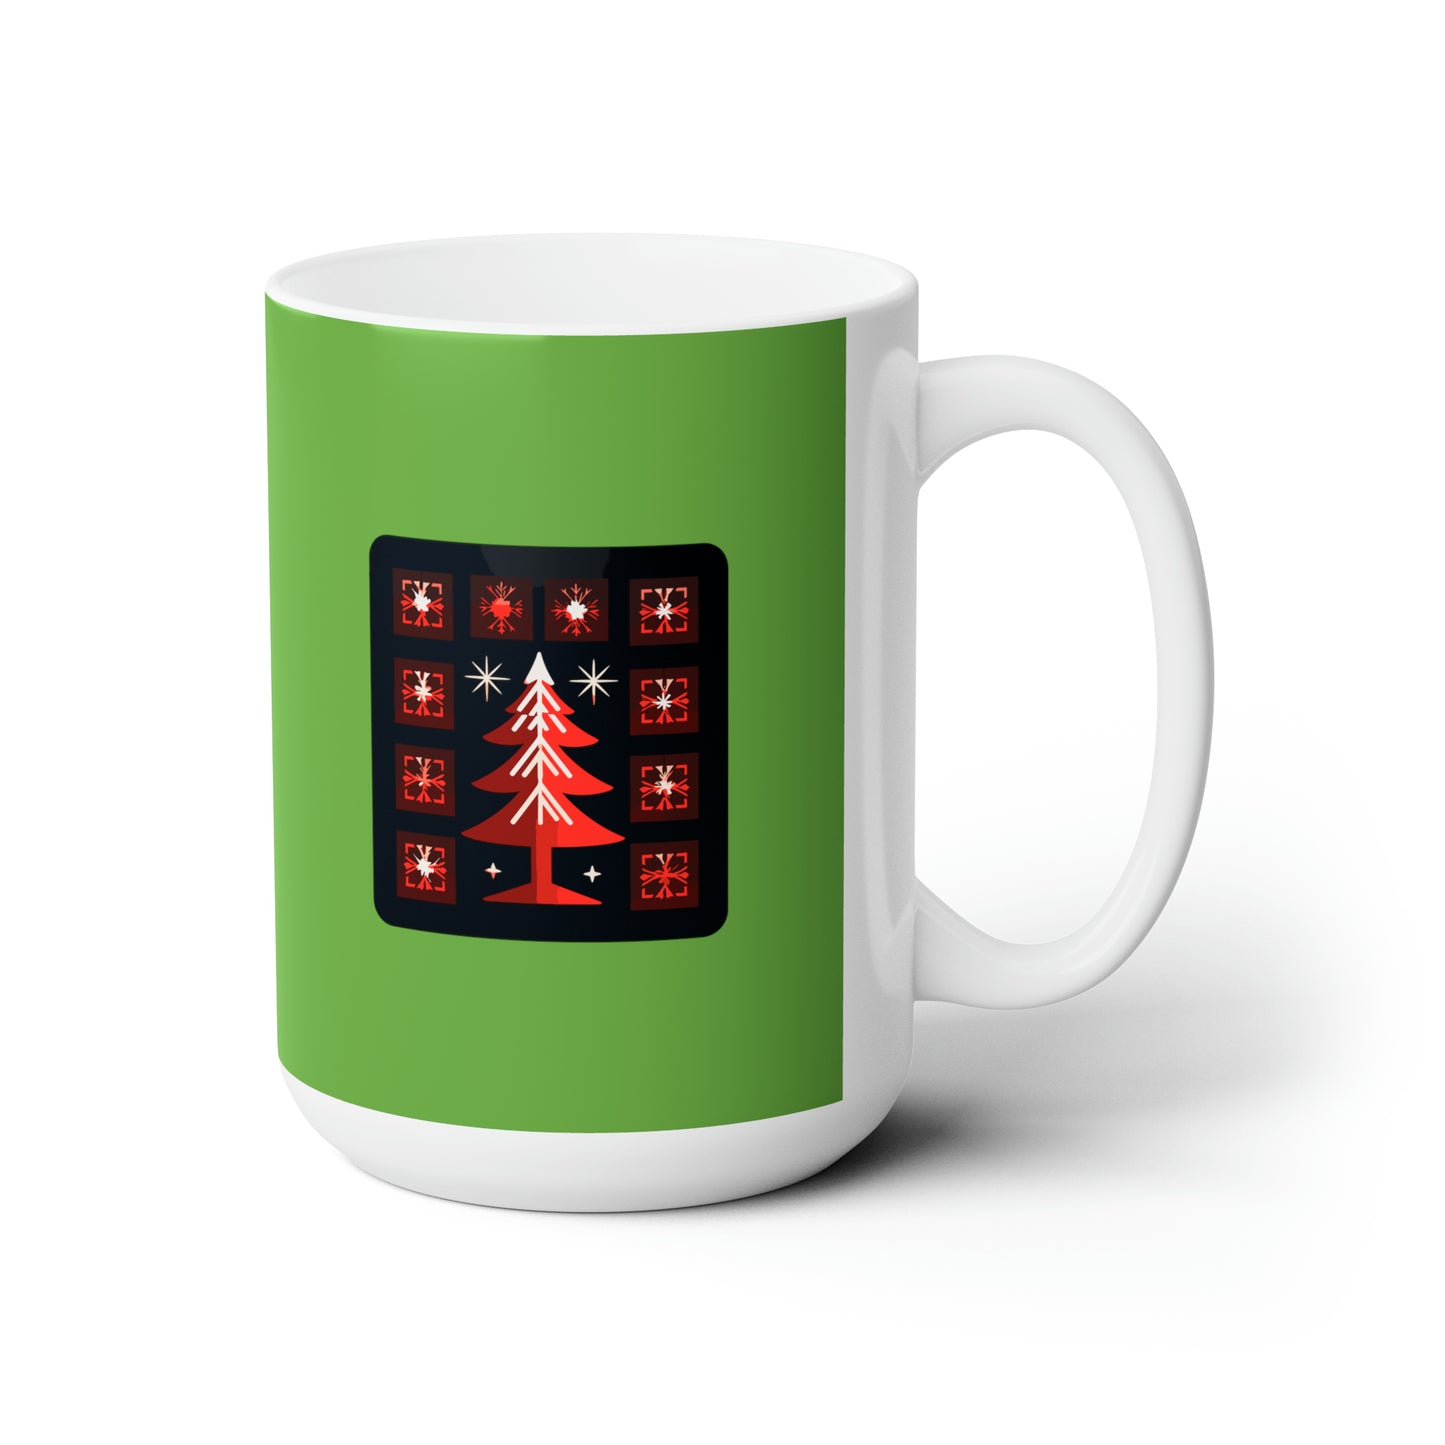 A big Christmas tree decoration, Green Ceramic Mug 15oz